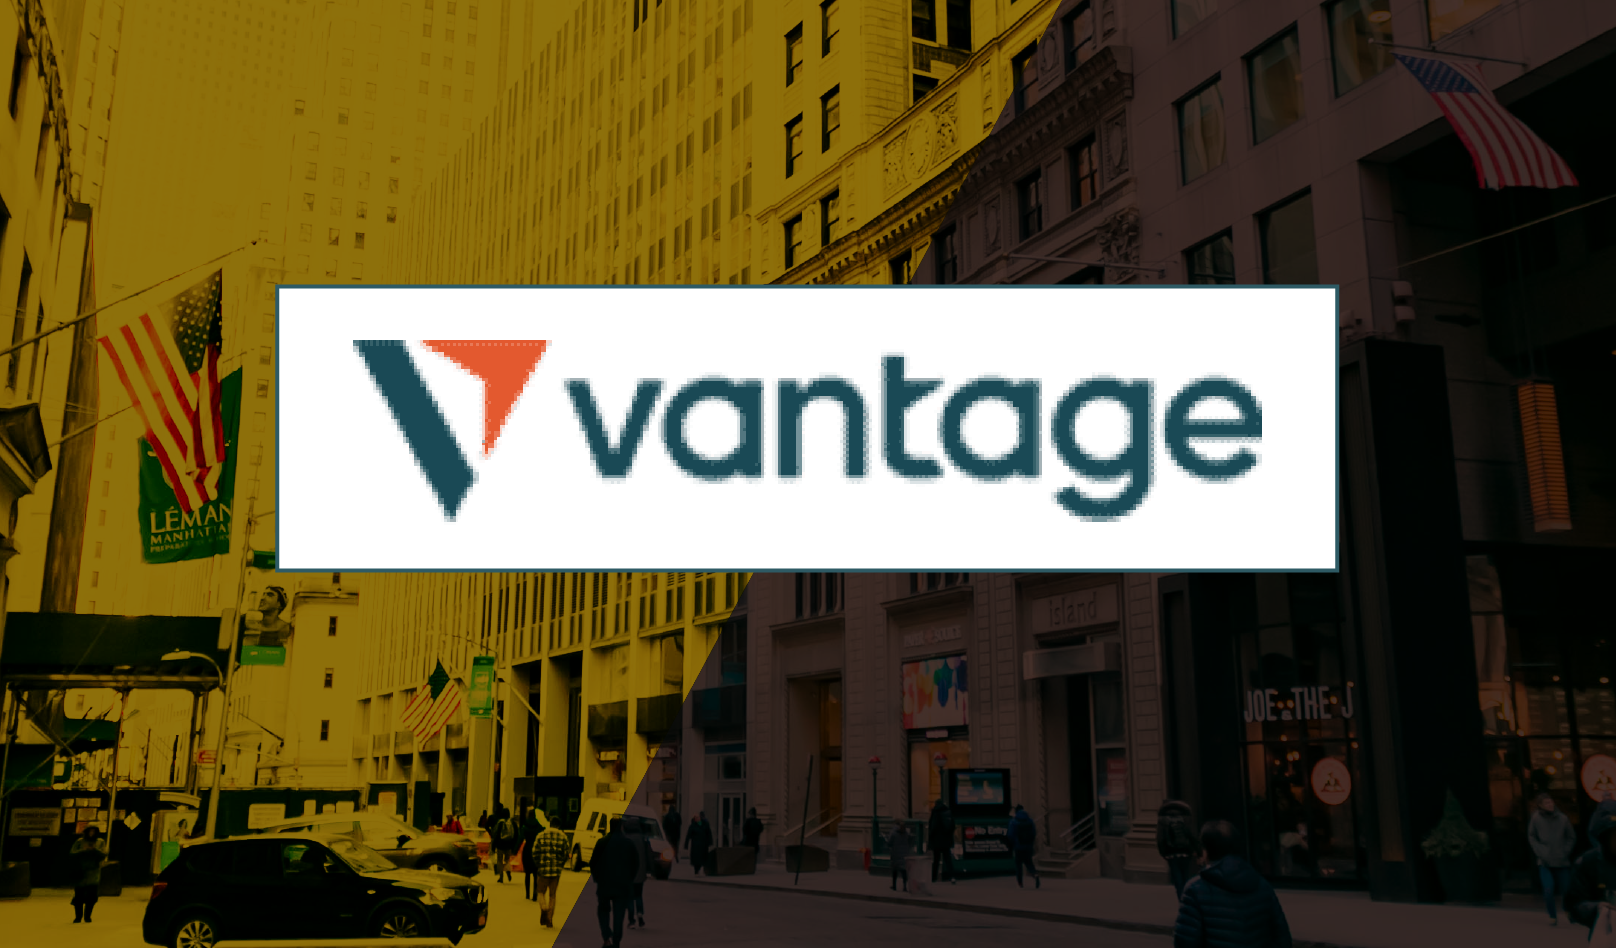 「Vantage(ヴァンテージ)の評判・口コミについてSNSやブログをチェック」のアイキャッチ画像